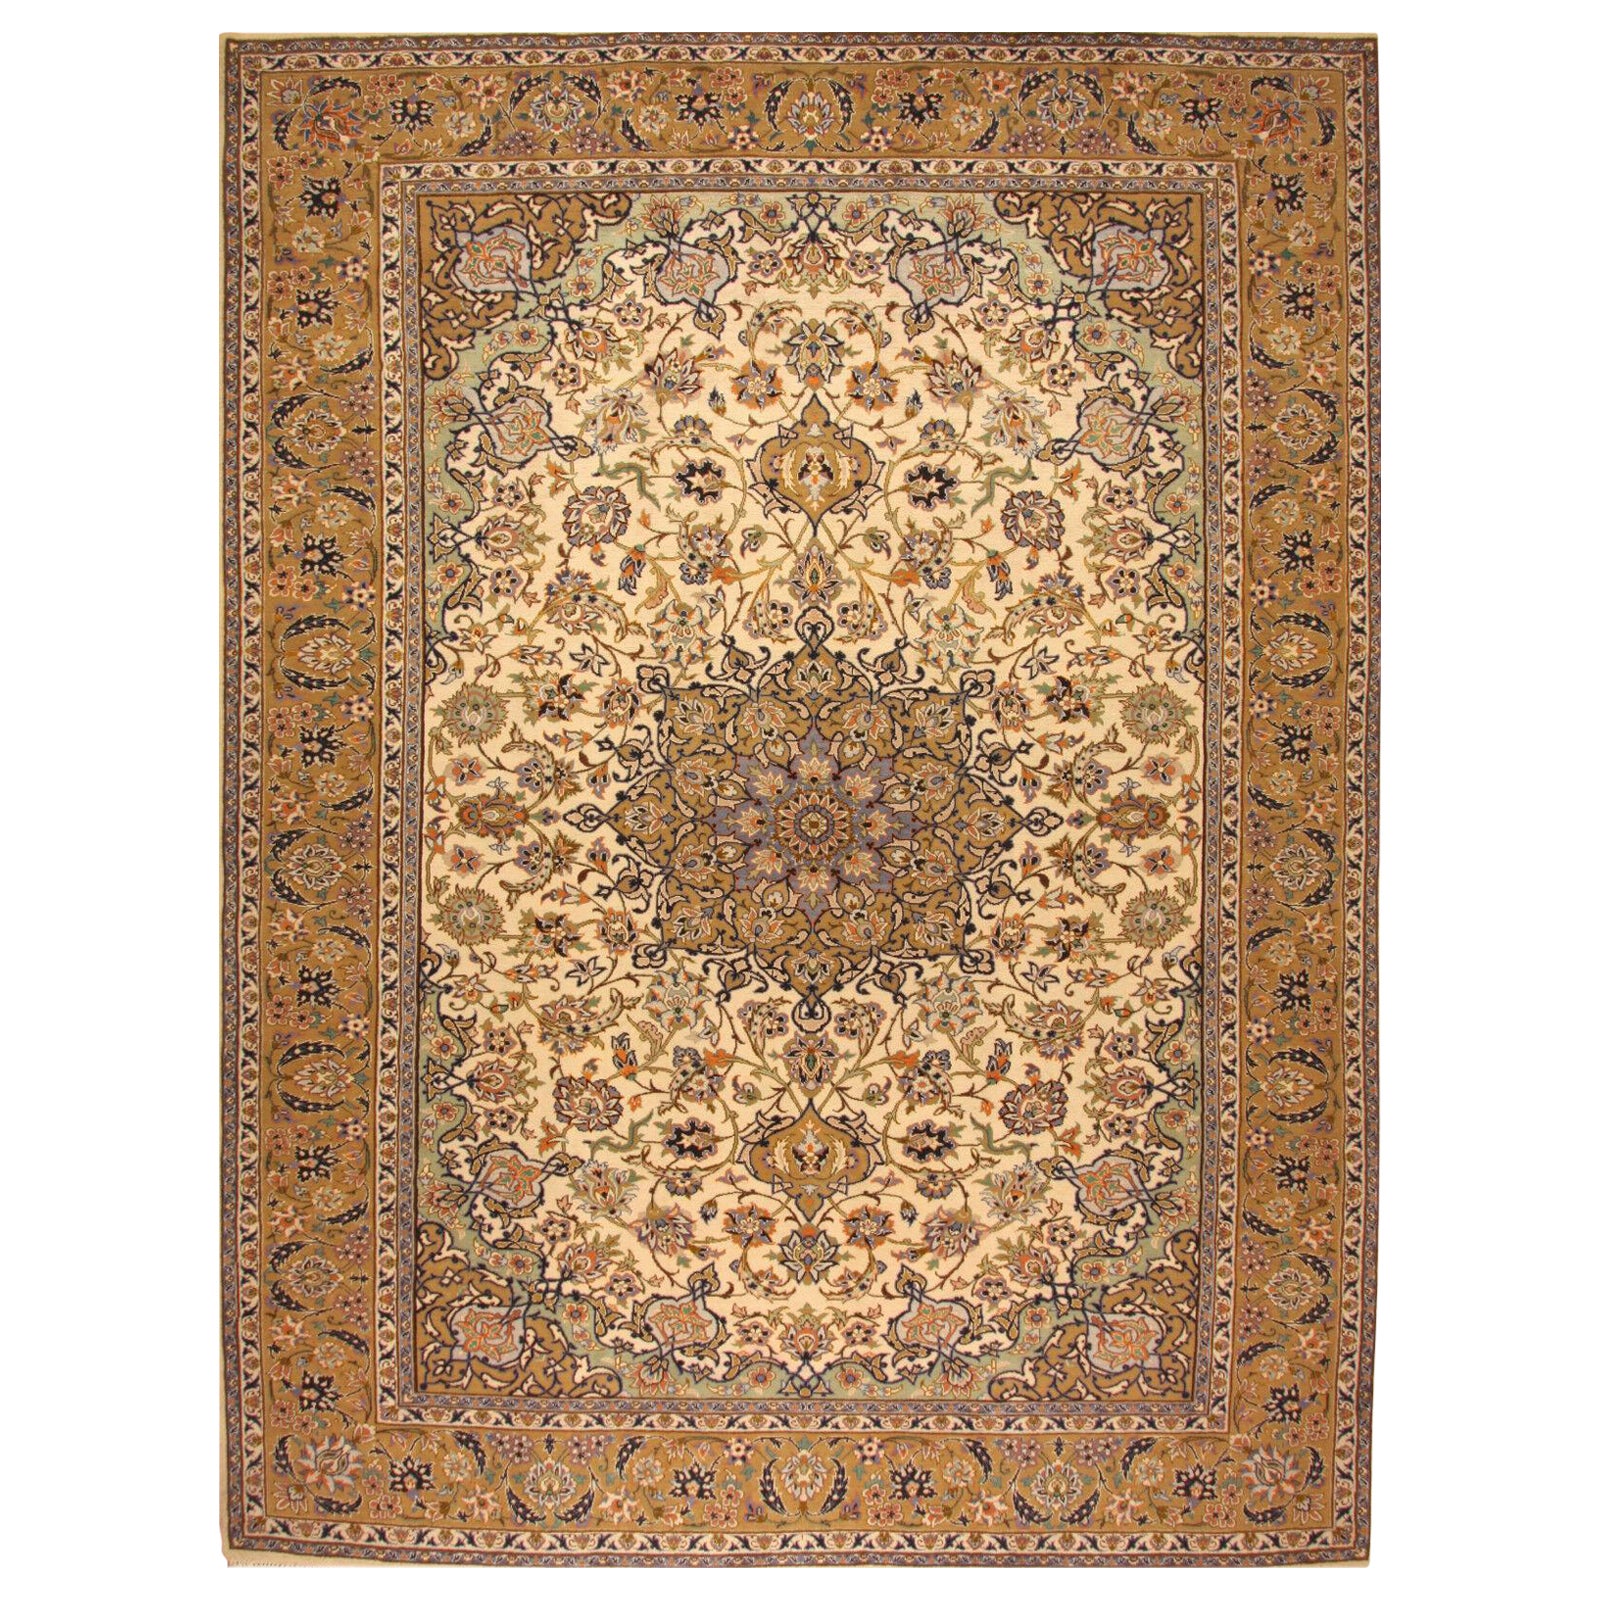 Handmade Contemporary Isfahan Rug 9.6' x 12.7' (295cm x 390cm), 2000s - 1T02